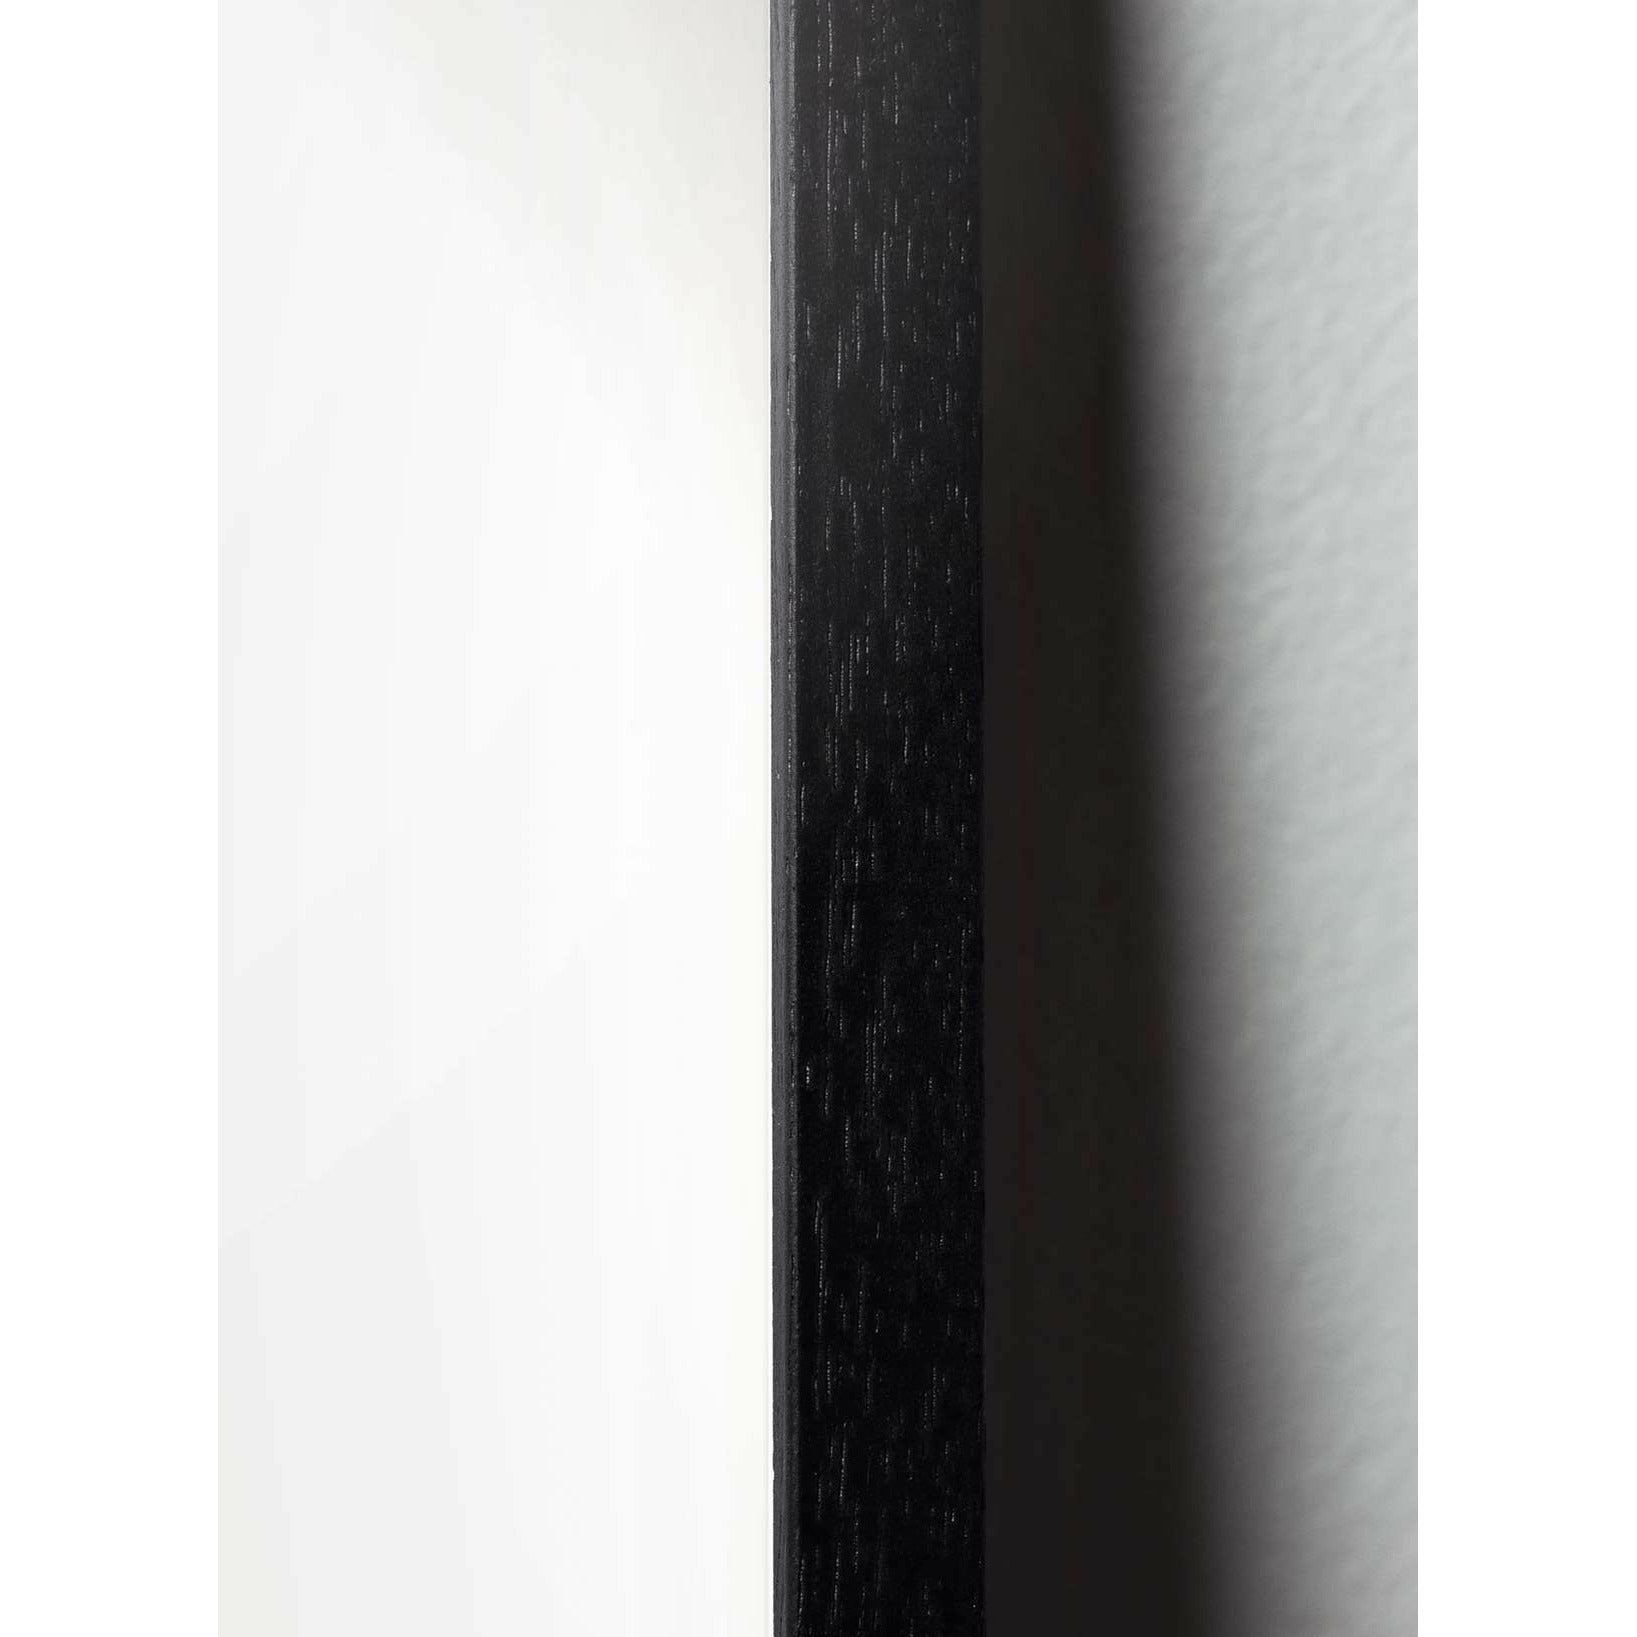 Póster clásico de hormigas de creación, marco en madera lacada negra de 70x100 cm, fondo blanco